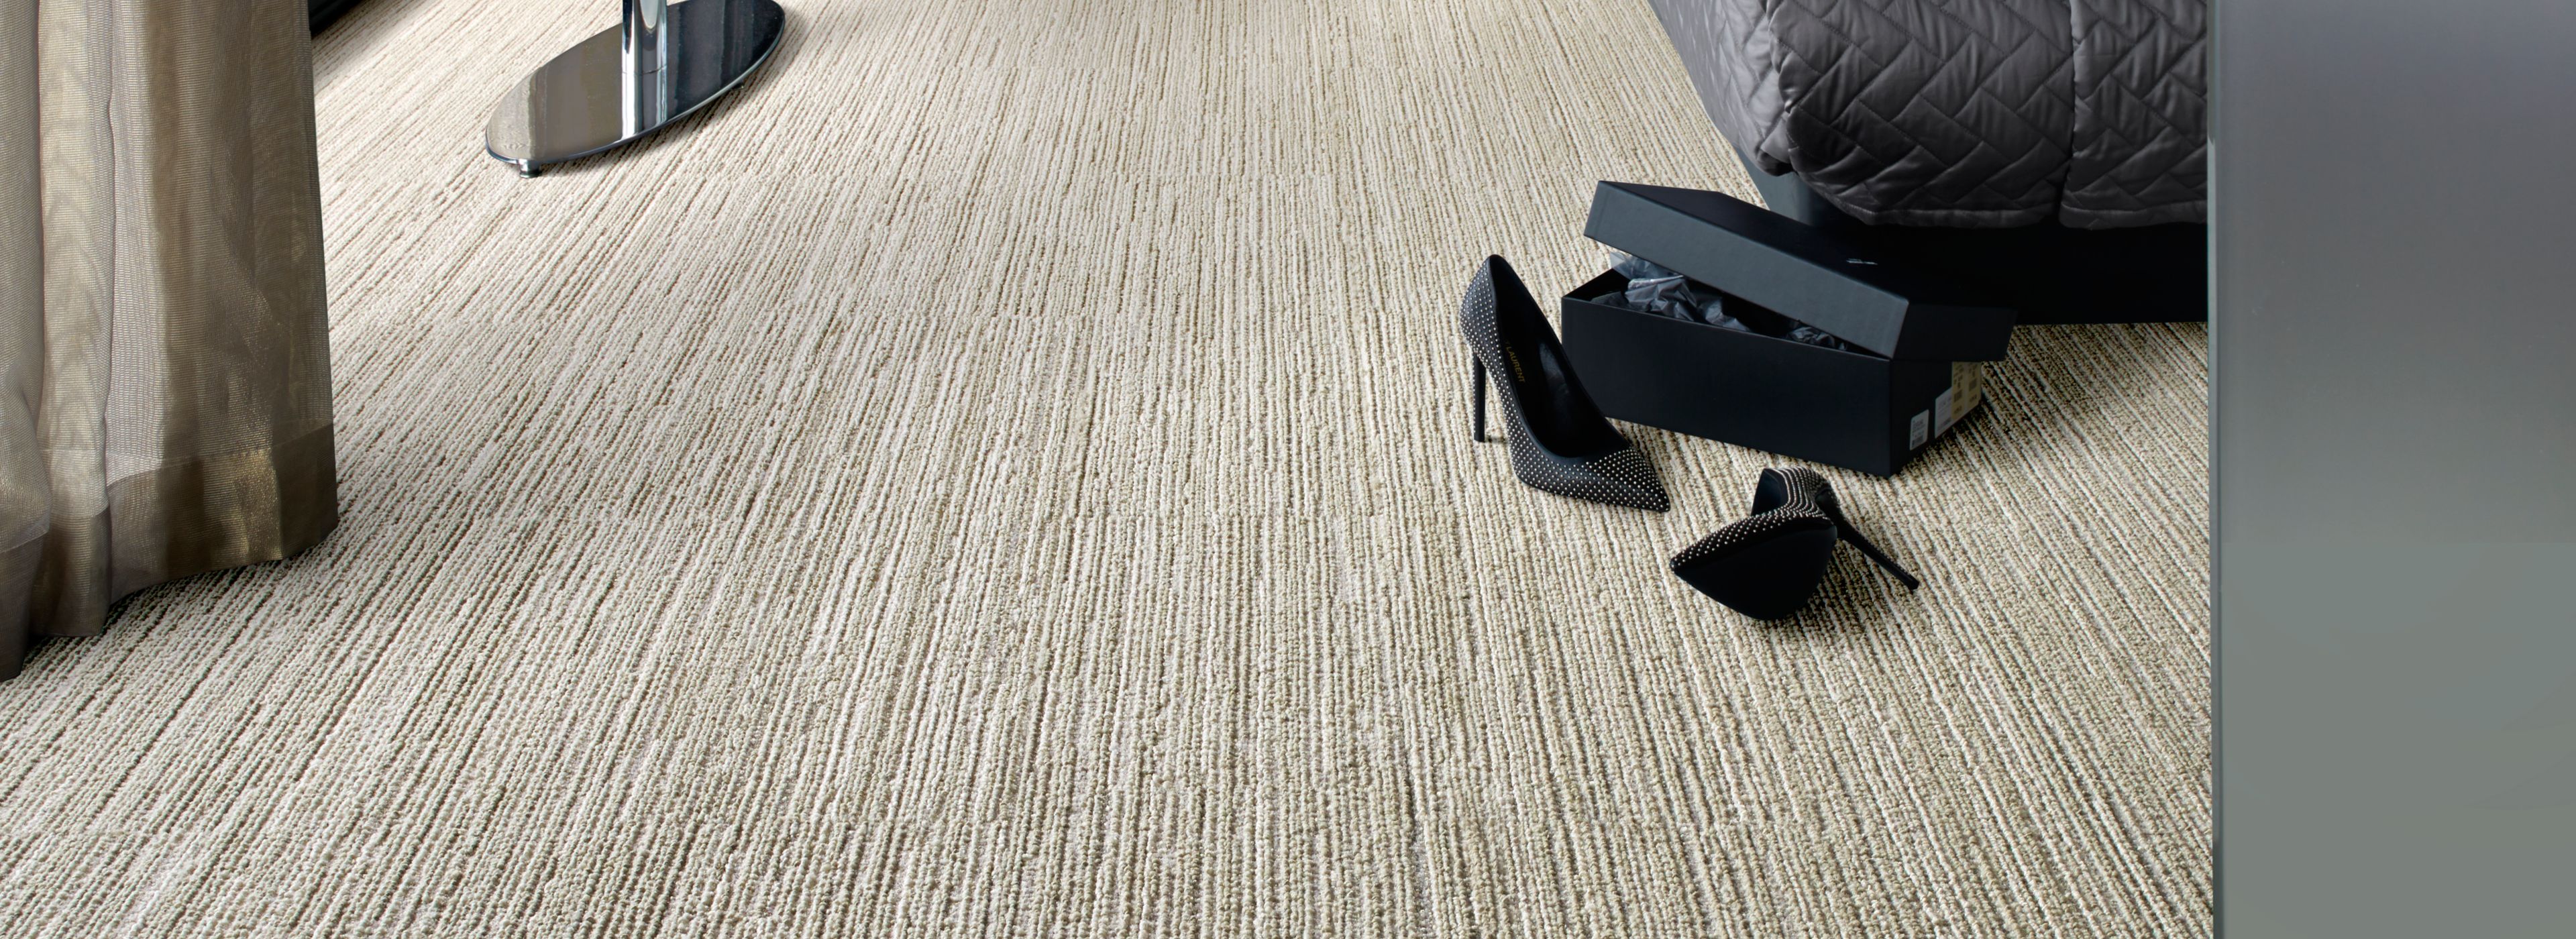 Interface RMS 101 carpet tile in hotel guest room numéro d’image 1